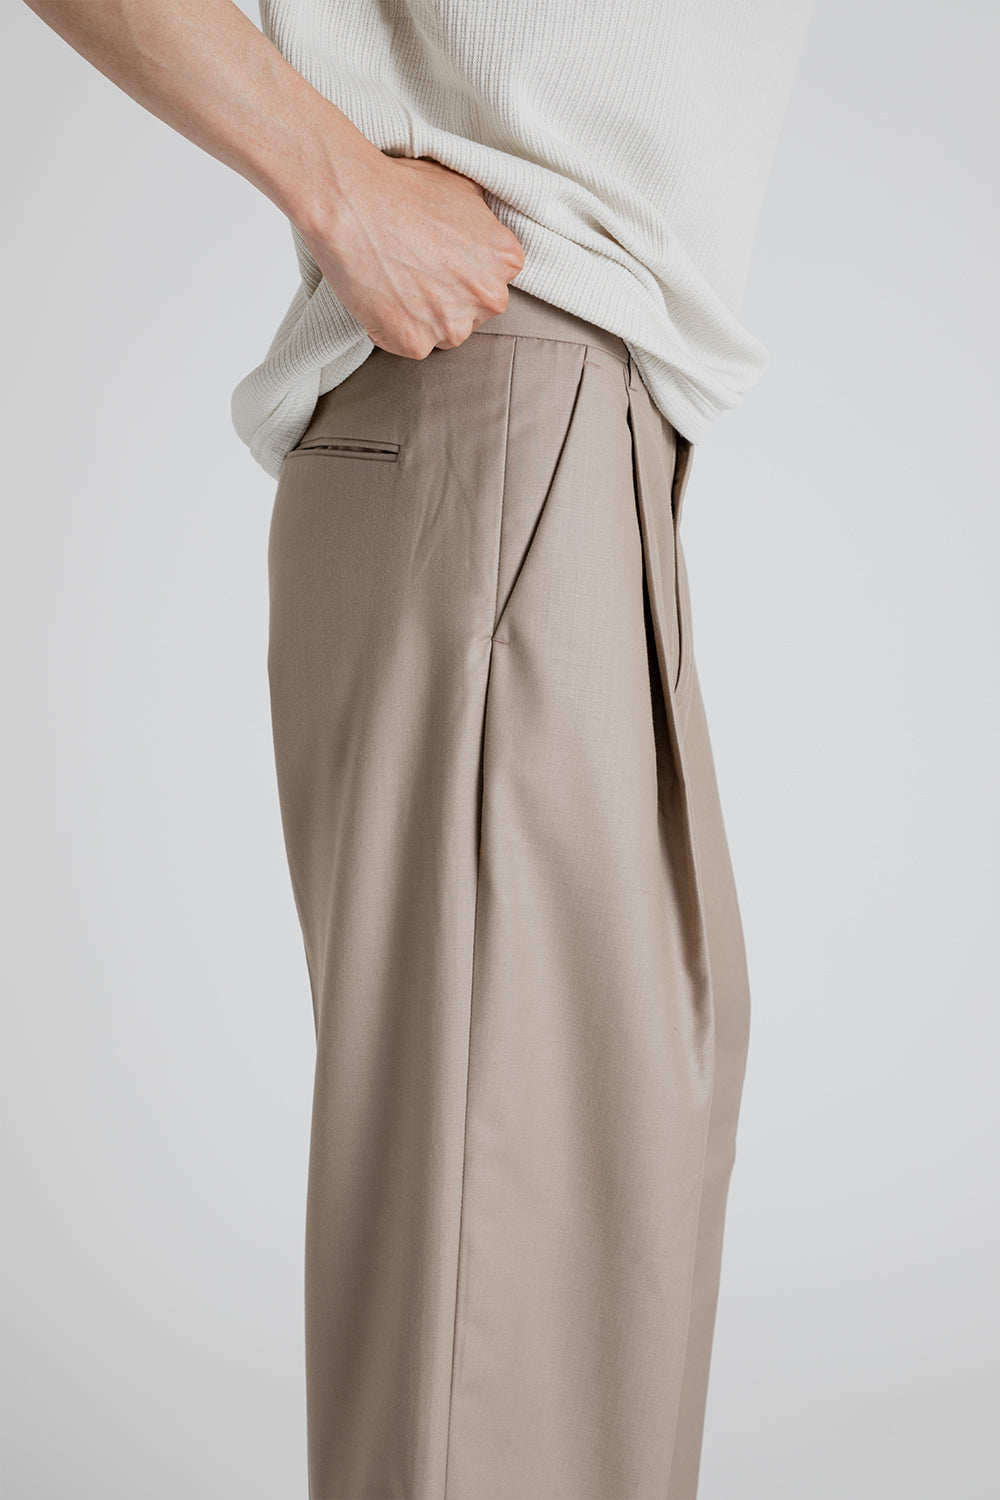 Frizmworks OG One Tuck Wide Slack Pants in Beige | Wallace Mercantile